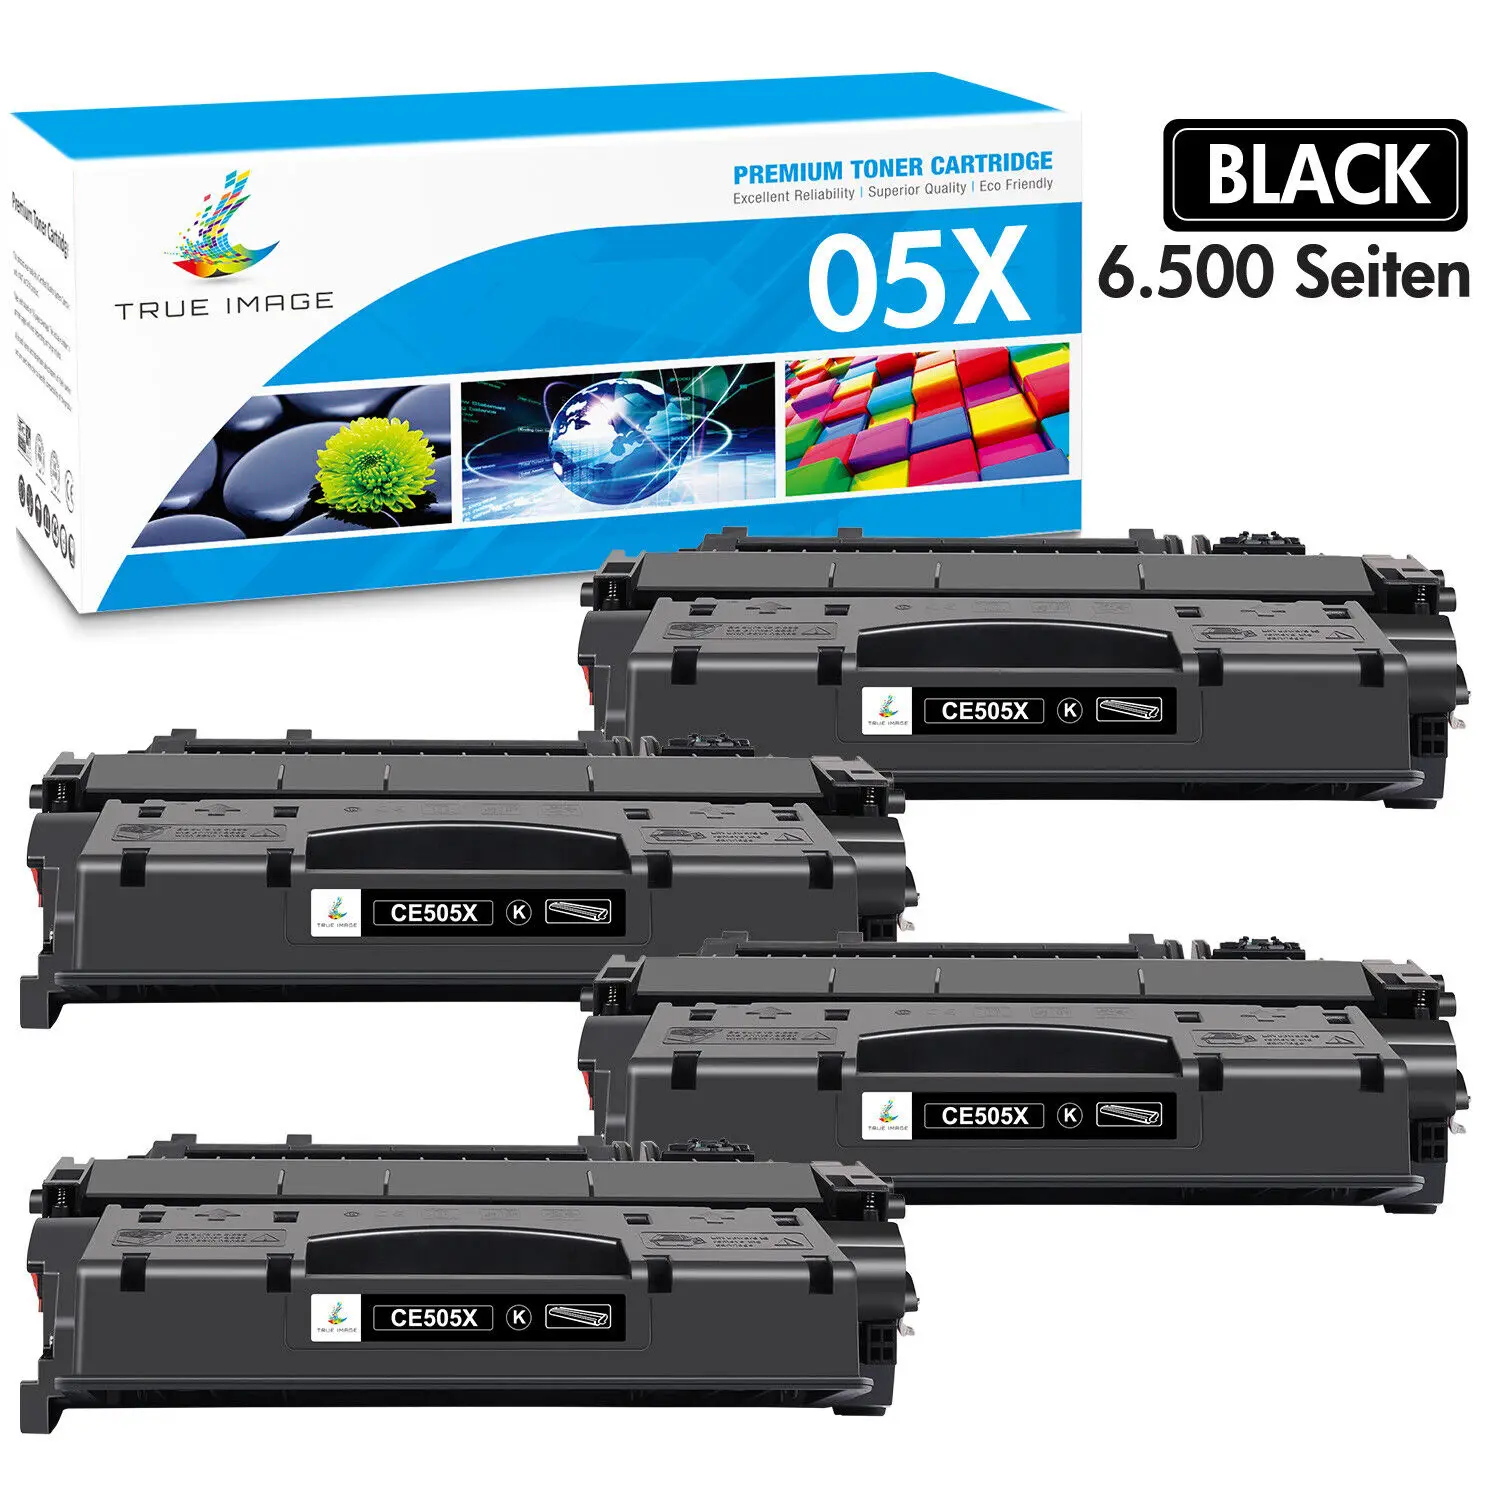 

4 Pack Black CE505X 05X Toner Compatible With HP LaserJet P2055d P2055dn P2055X